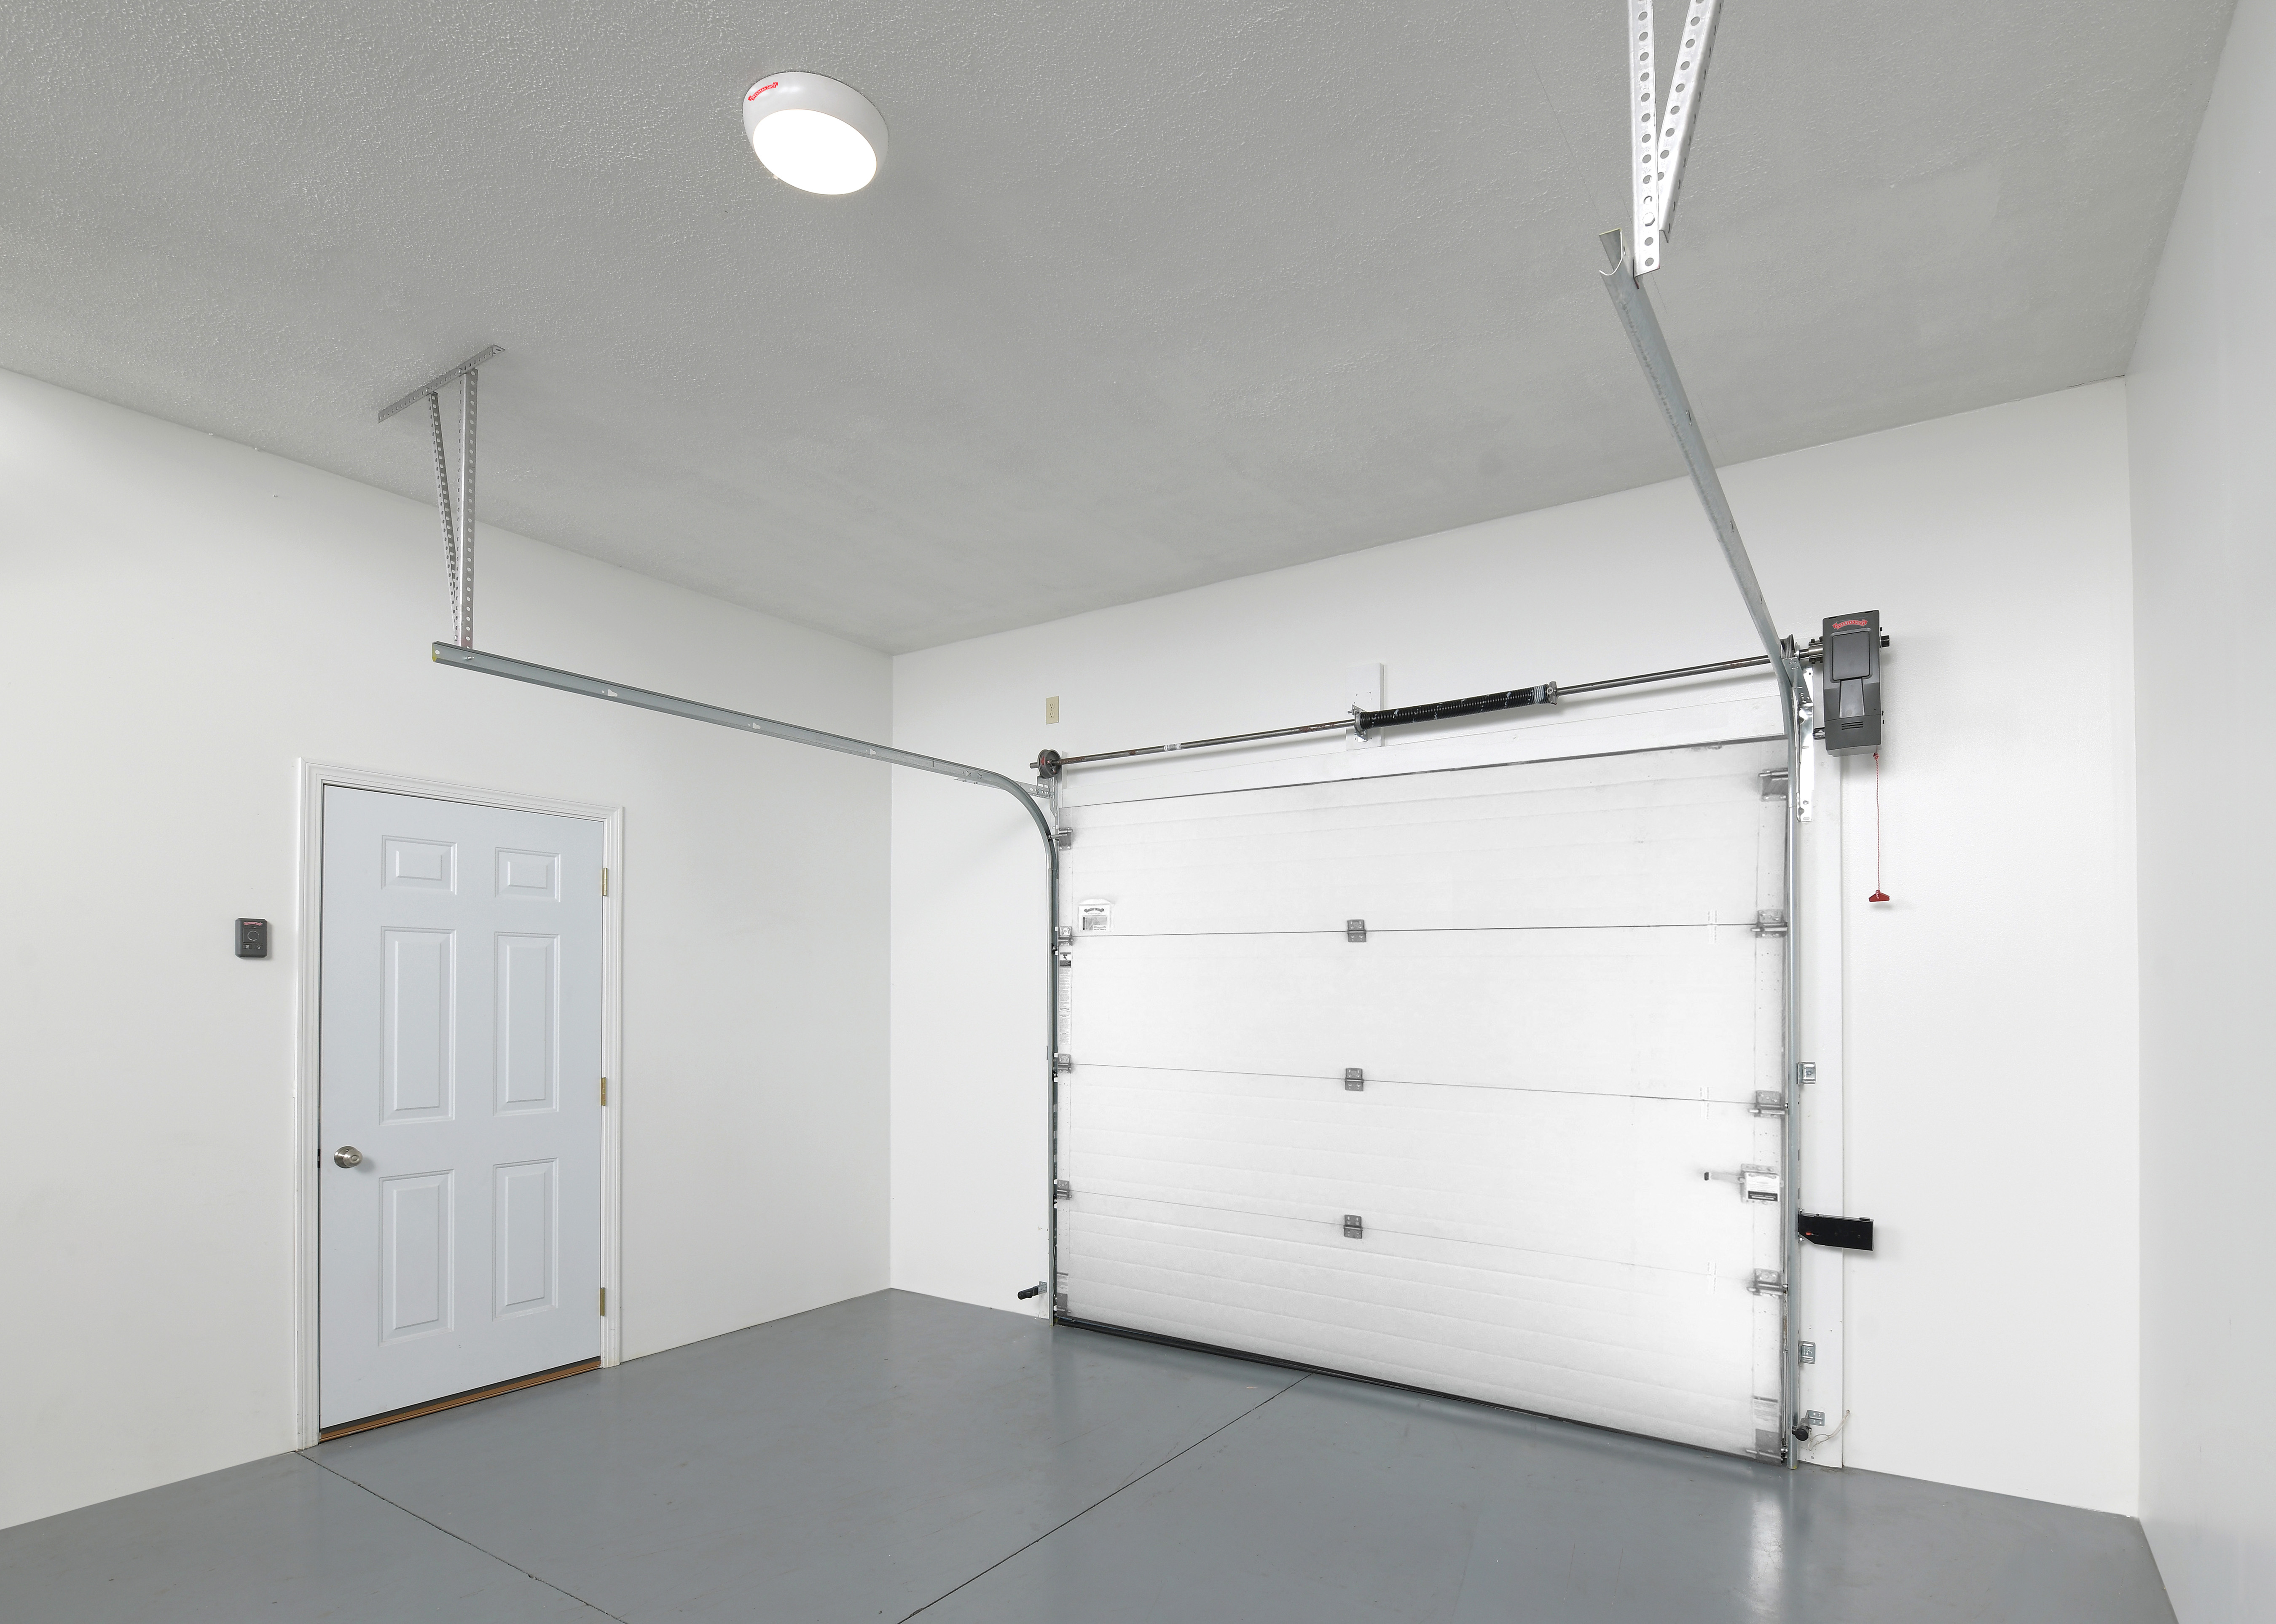 Overhead Door Infinity 2000 Wall Mount Garage Openers Application 